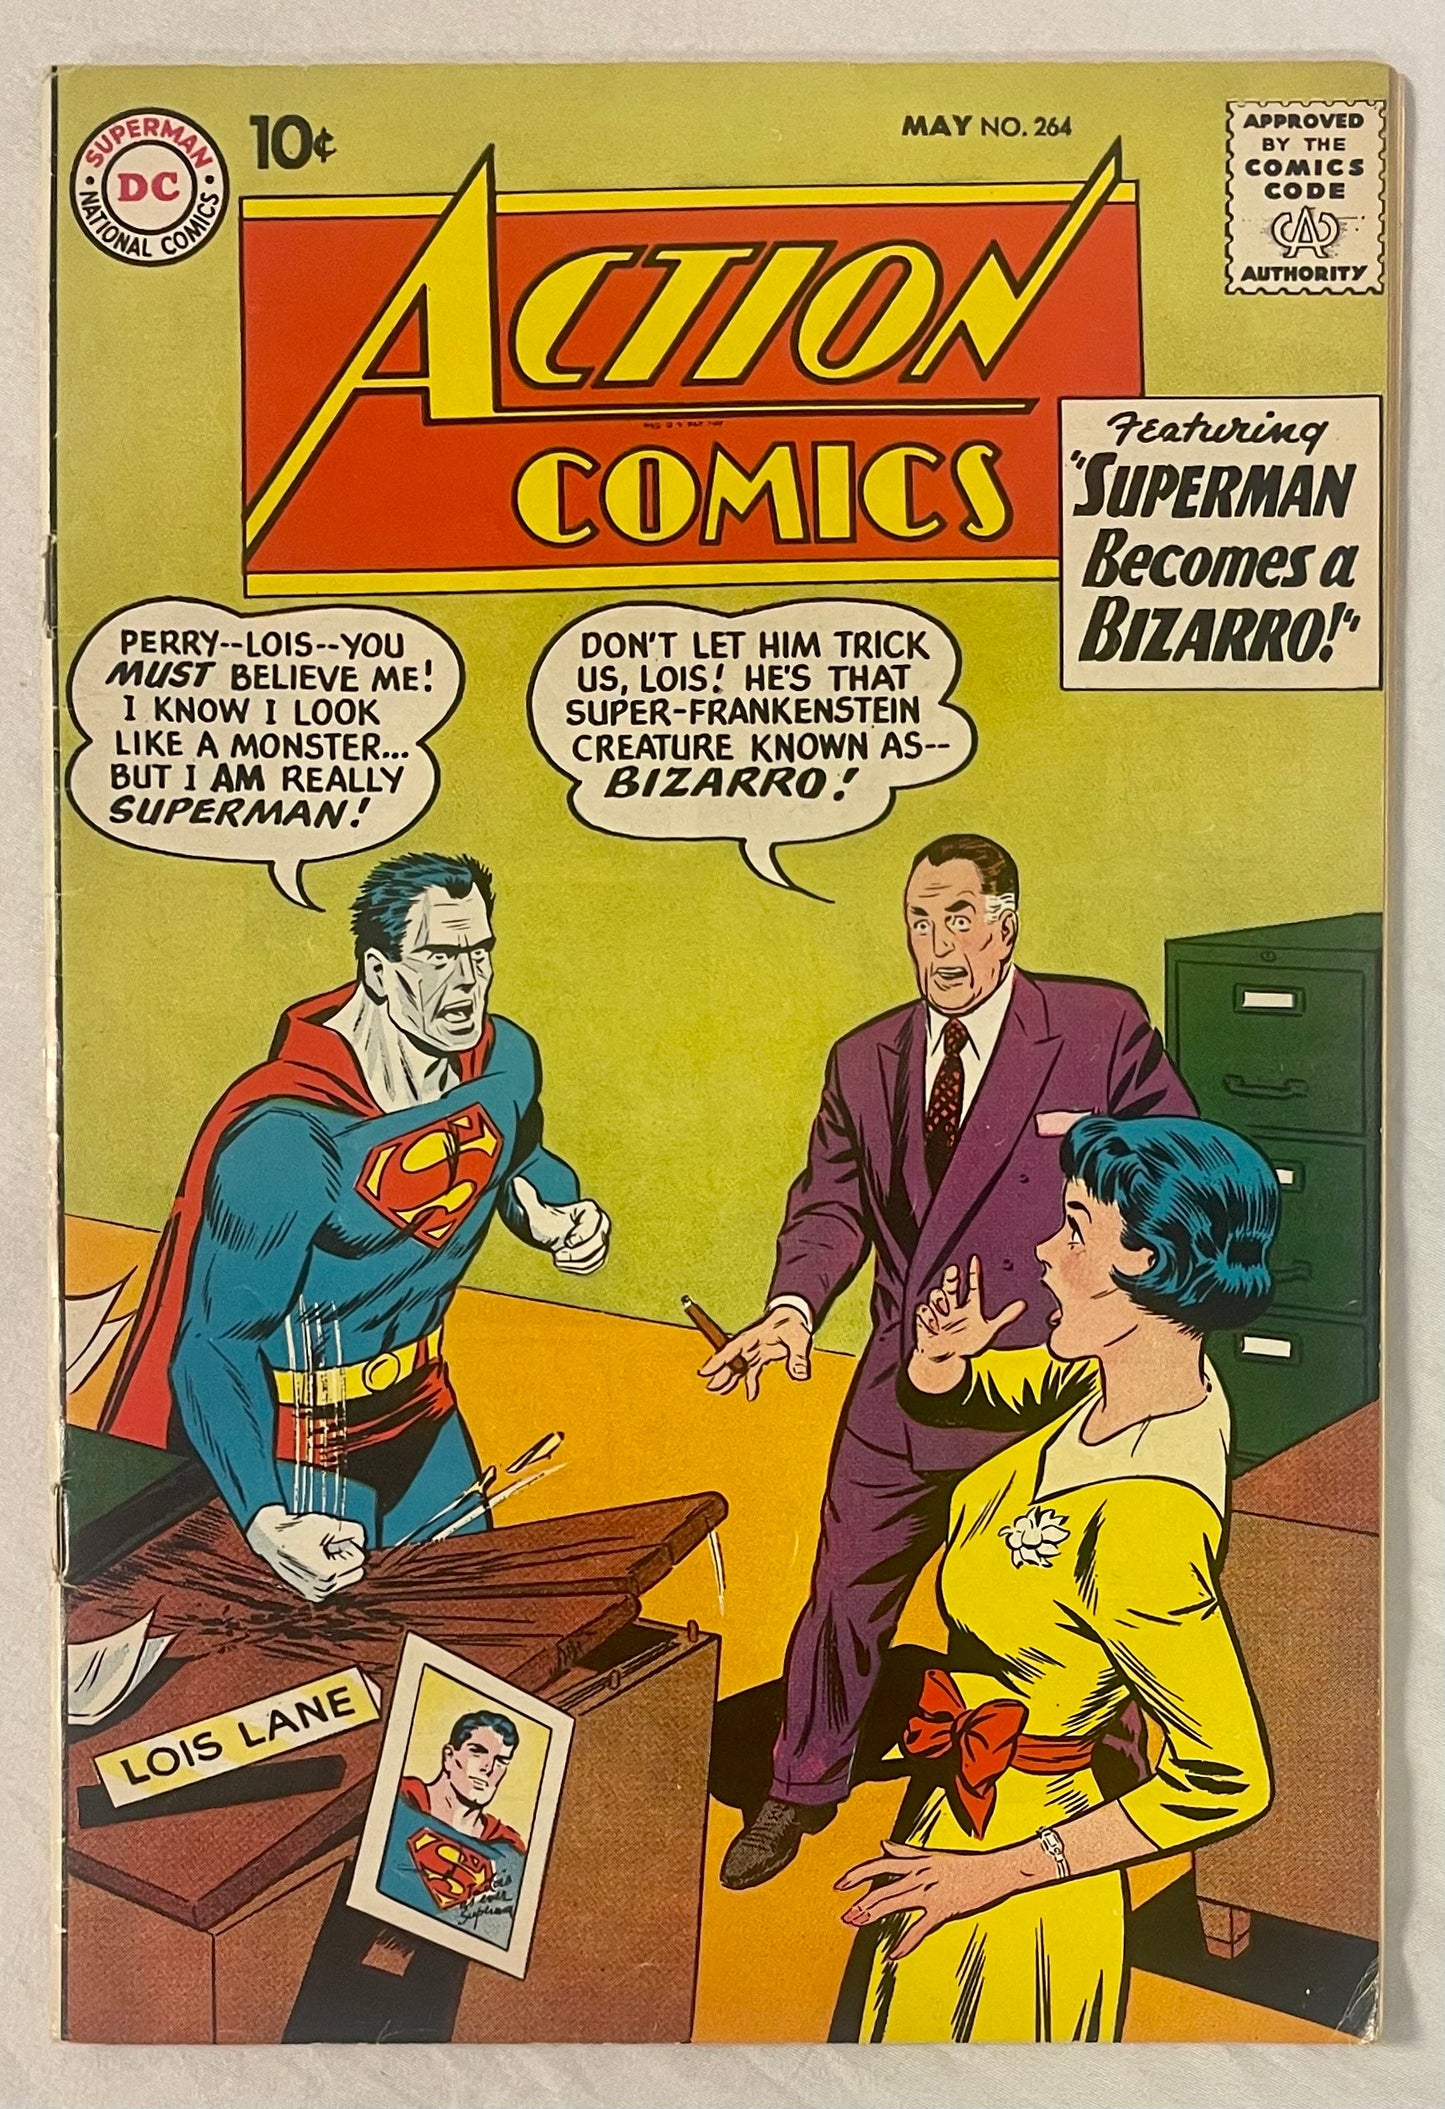 DC Comics Action Comics No. 264